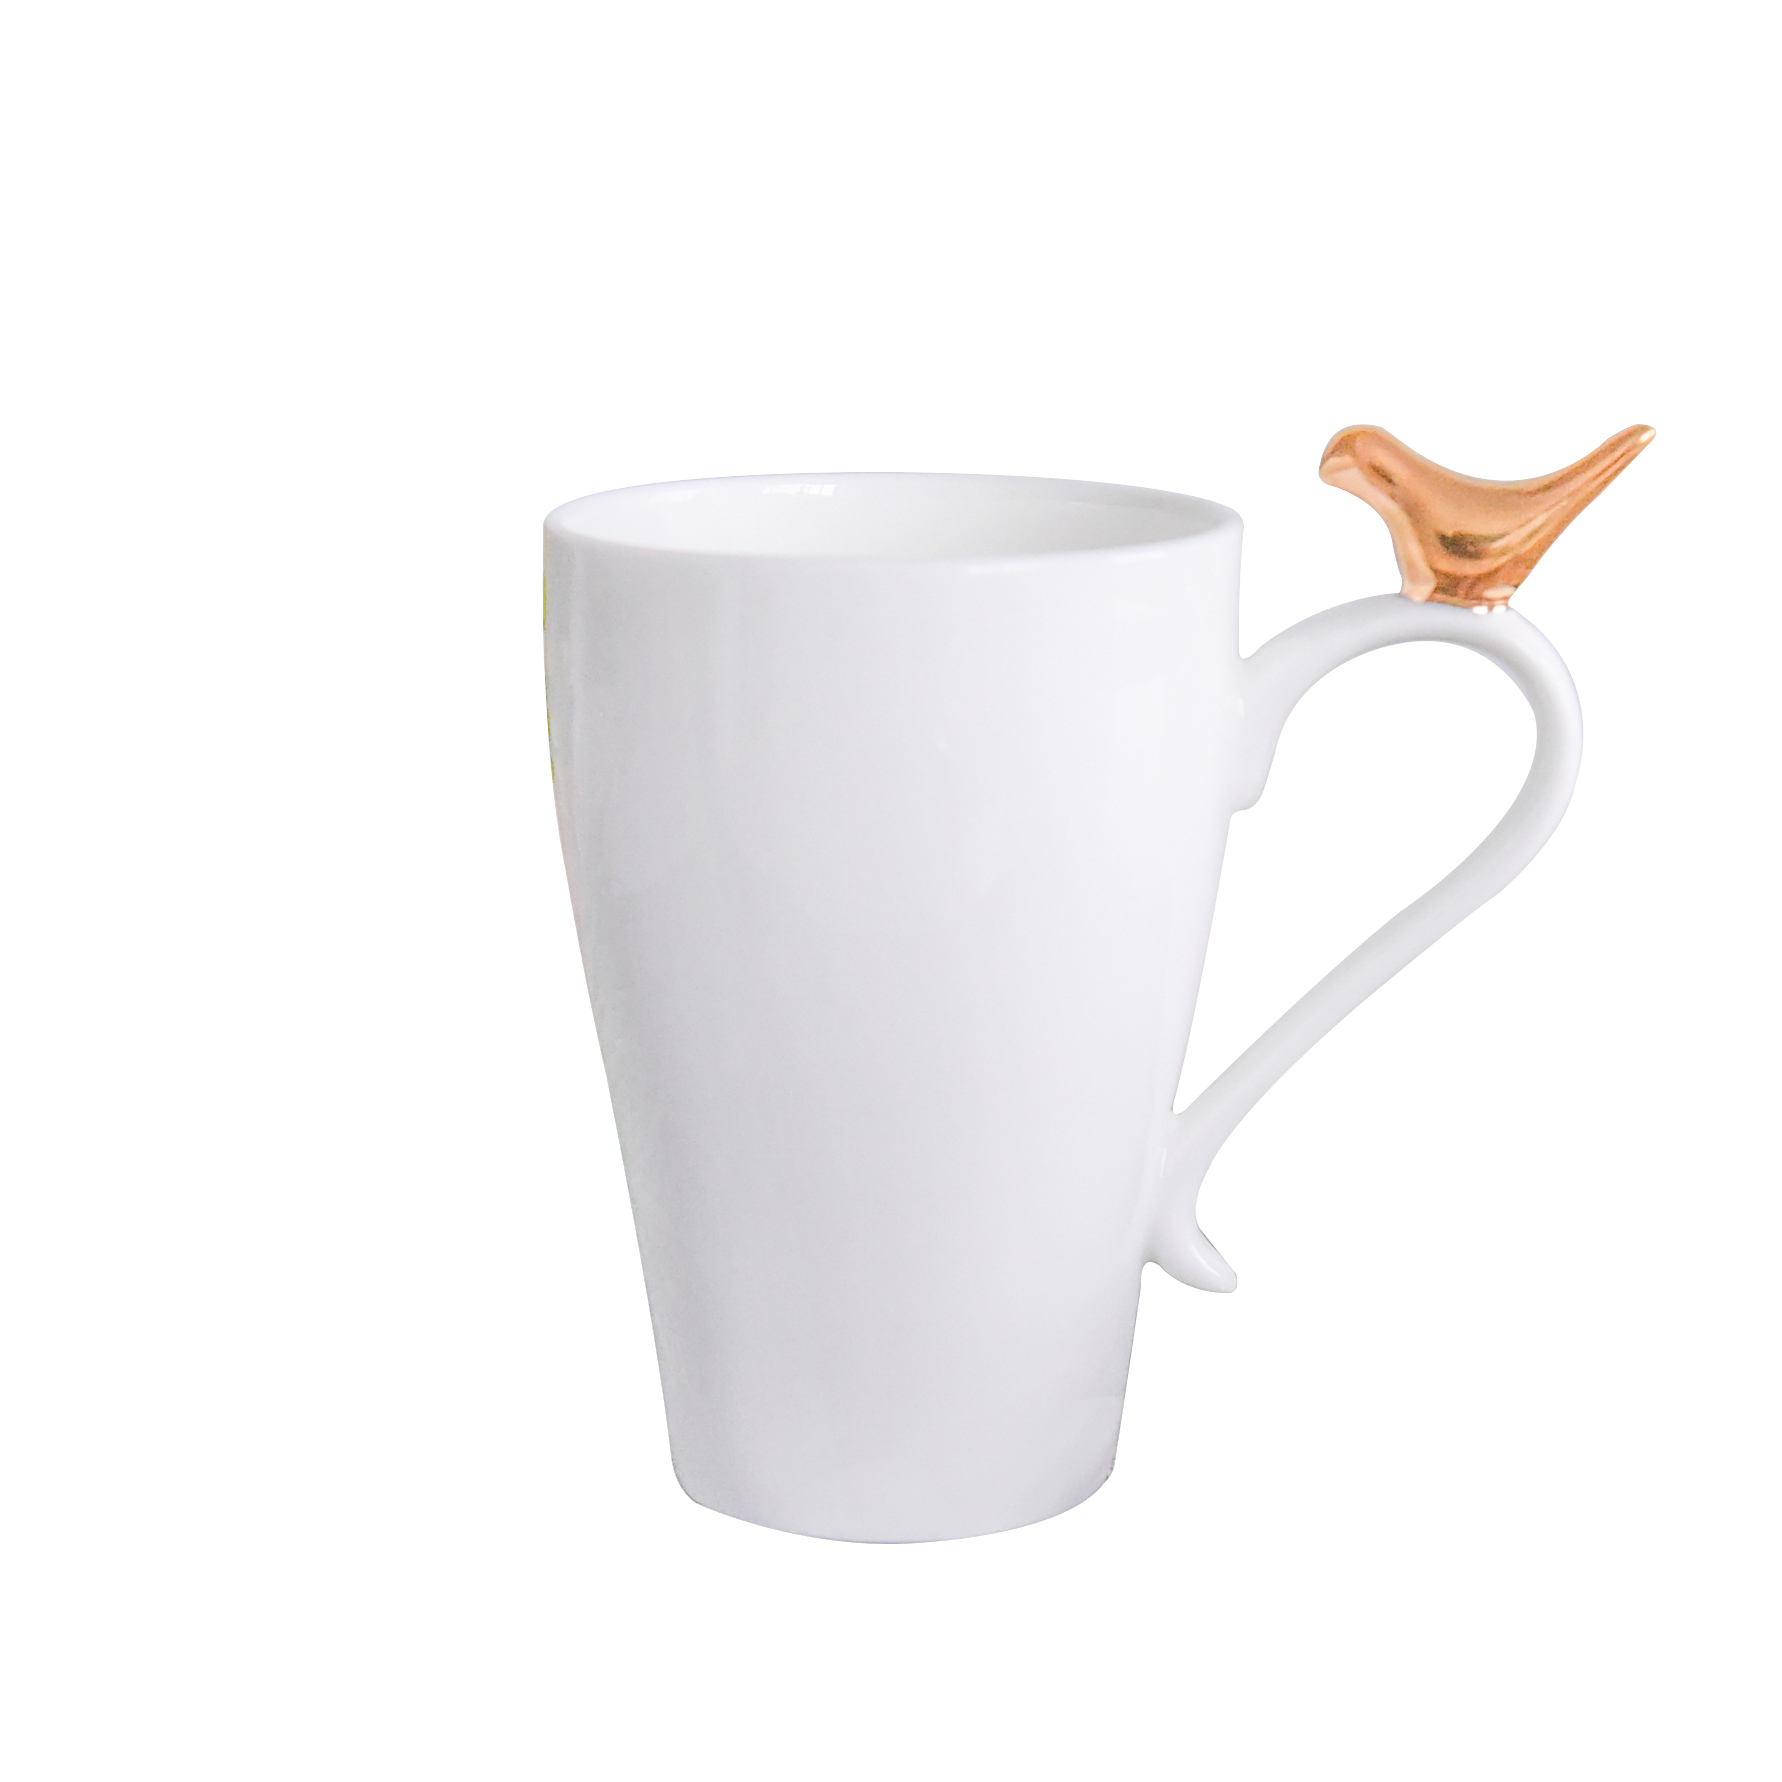 厂家批发骨瓷金边水杯欧式家用咖啡杯骨瓷马克杯定制画面